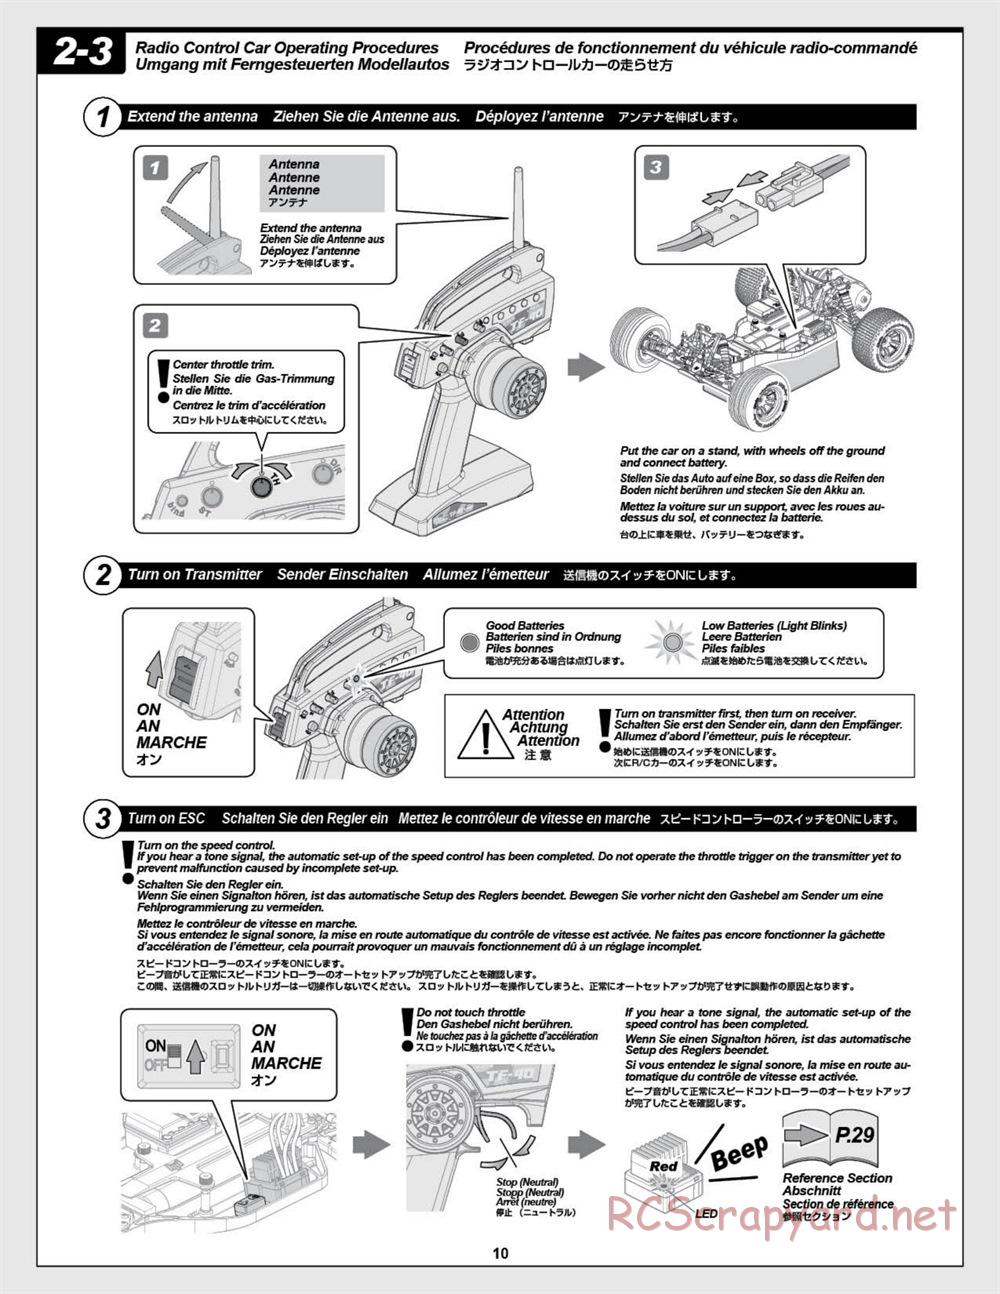 HPI - E-Firestorm-10T - Manual - Page 10